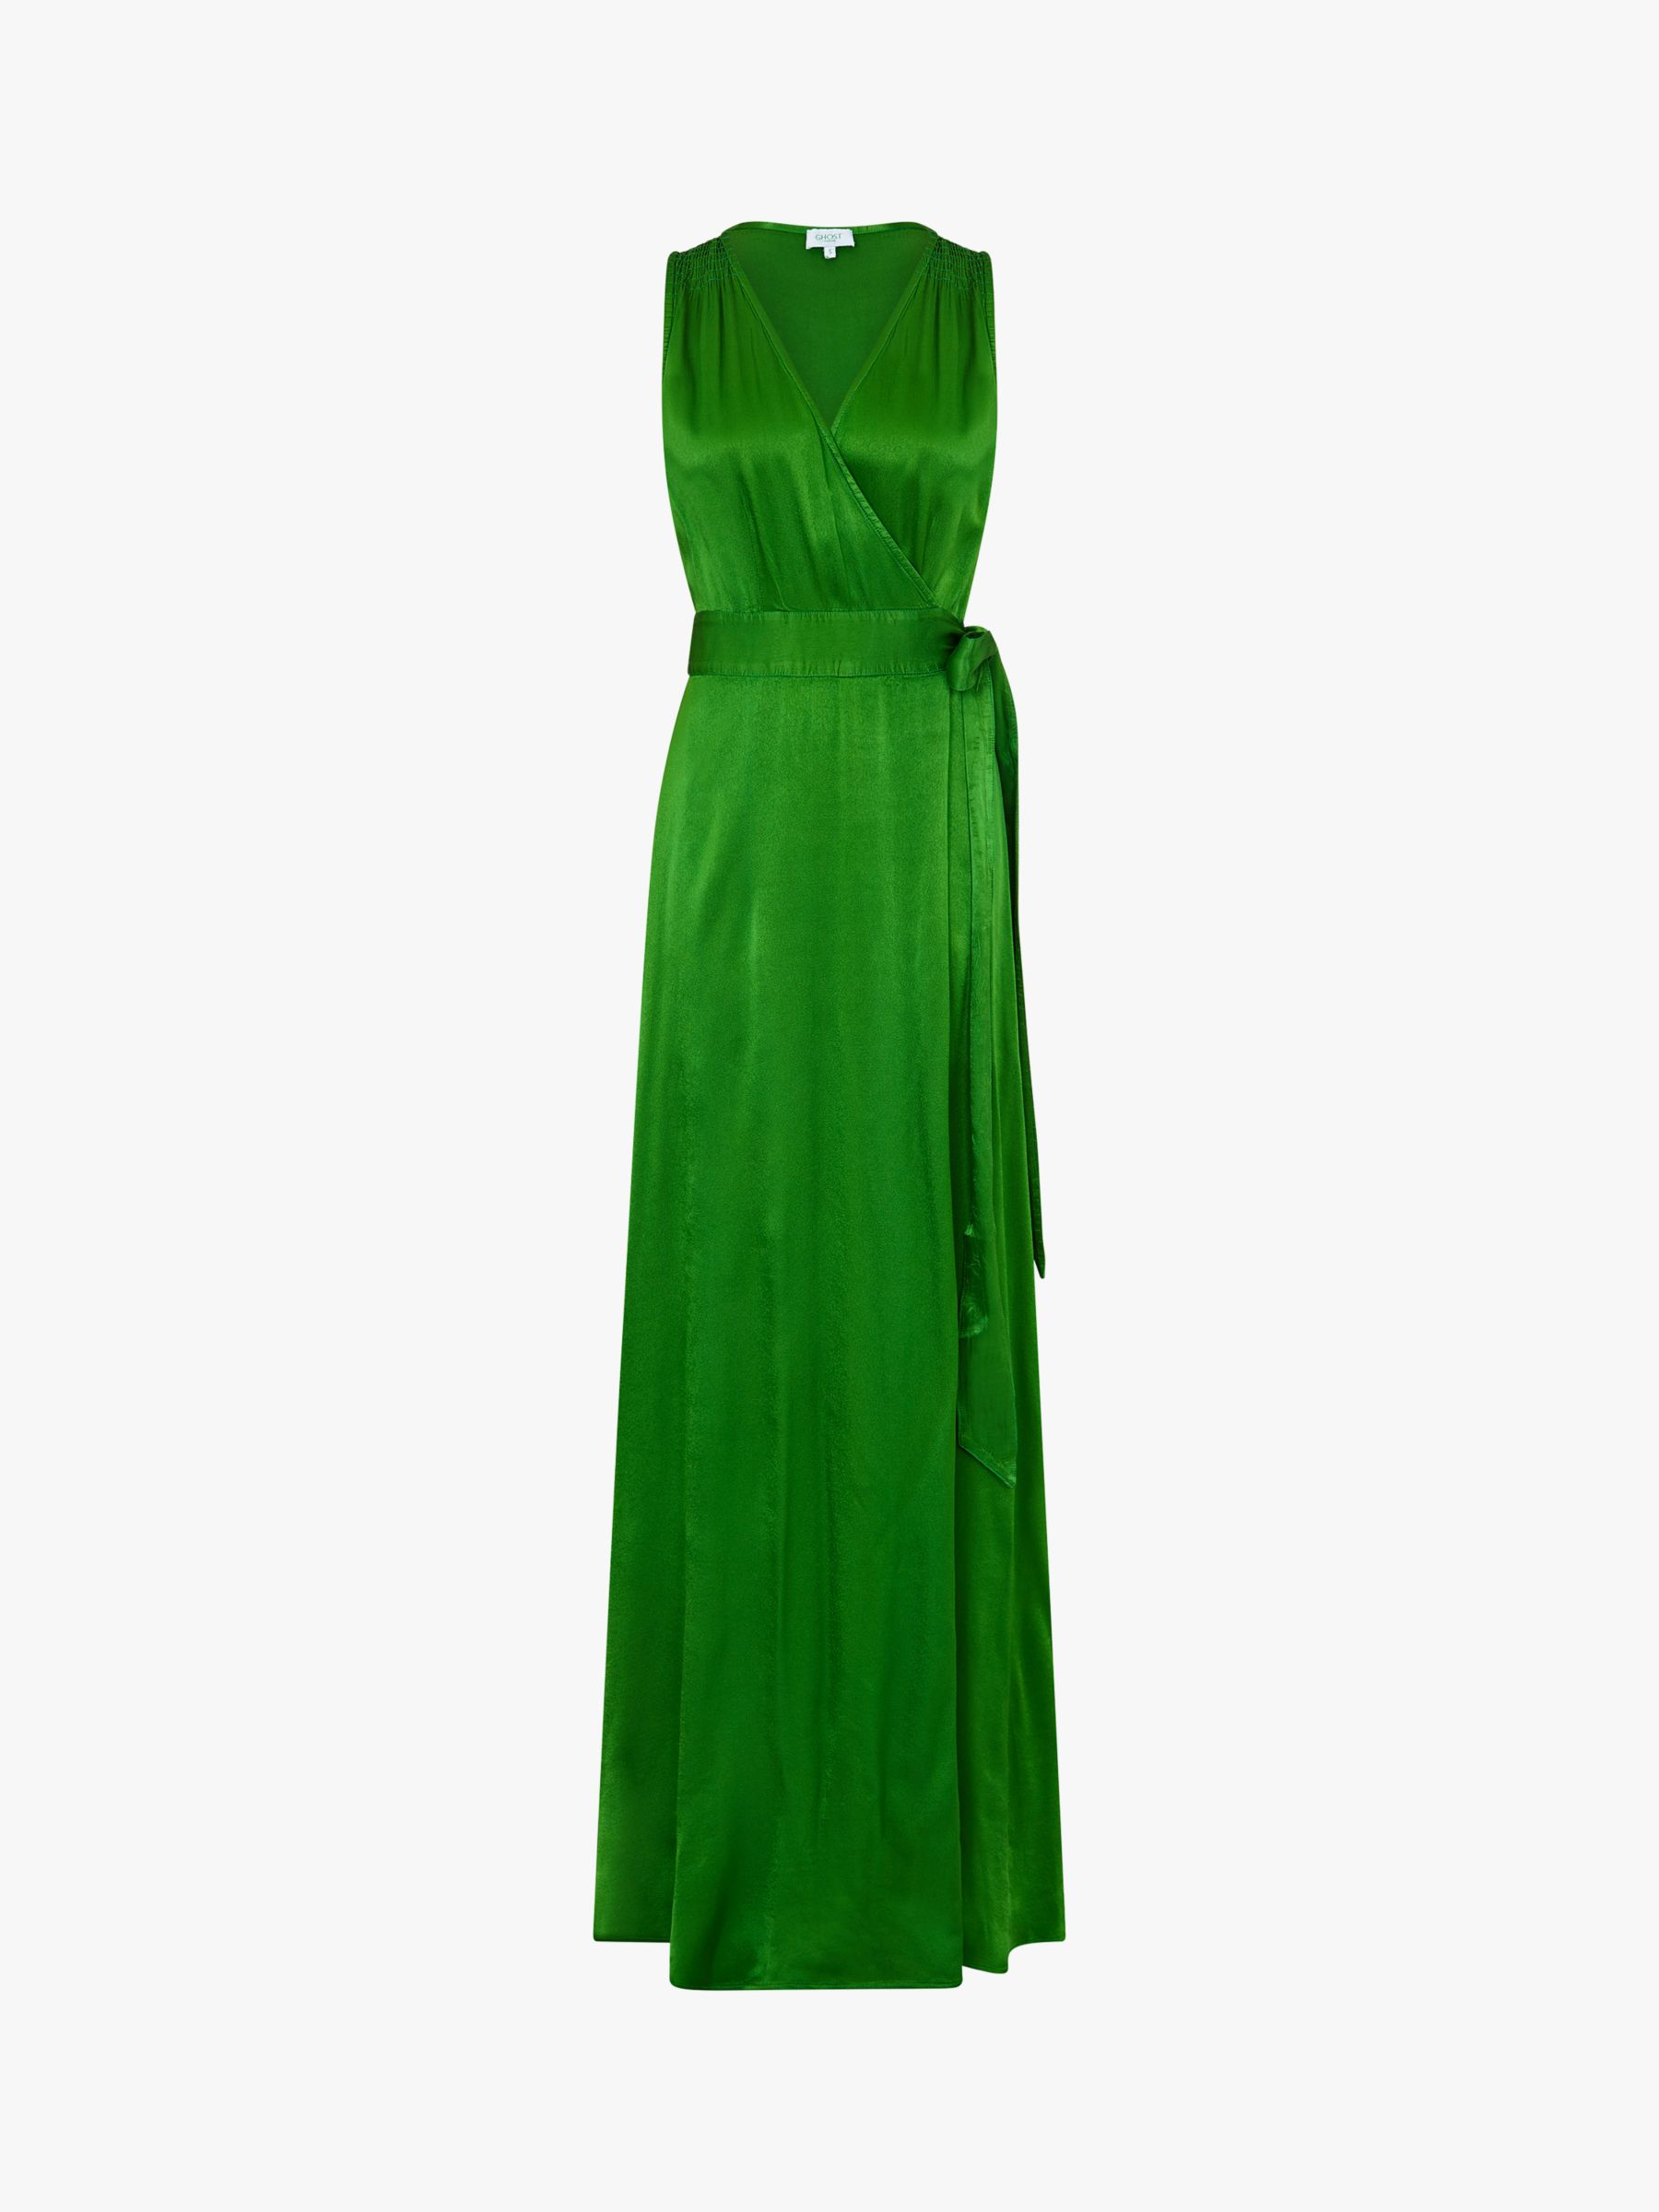 bright green satin dress